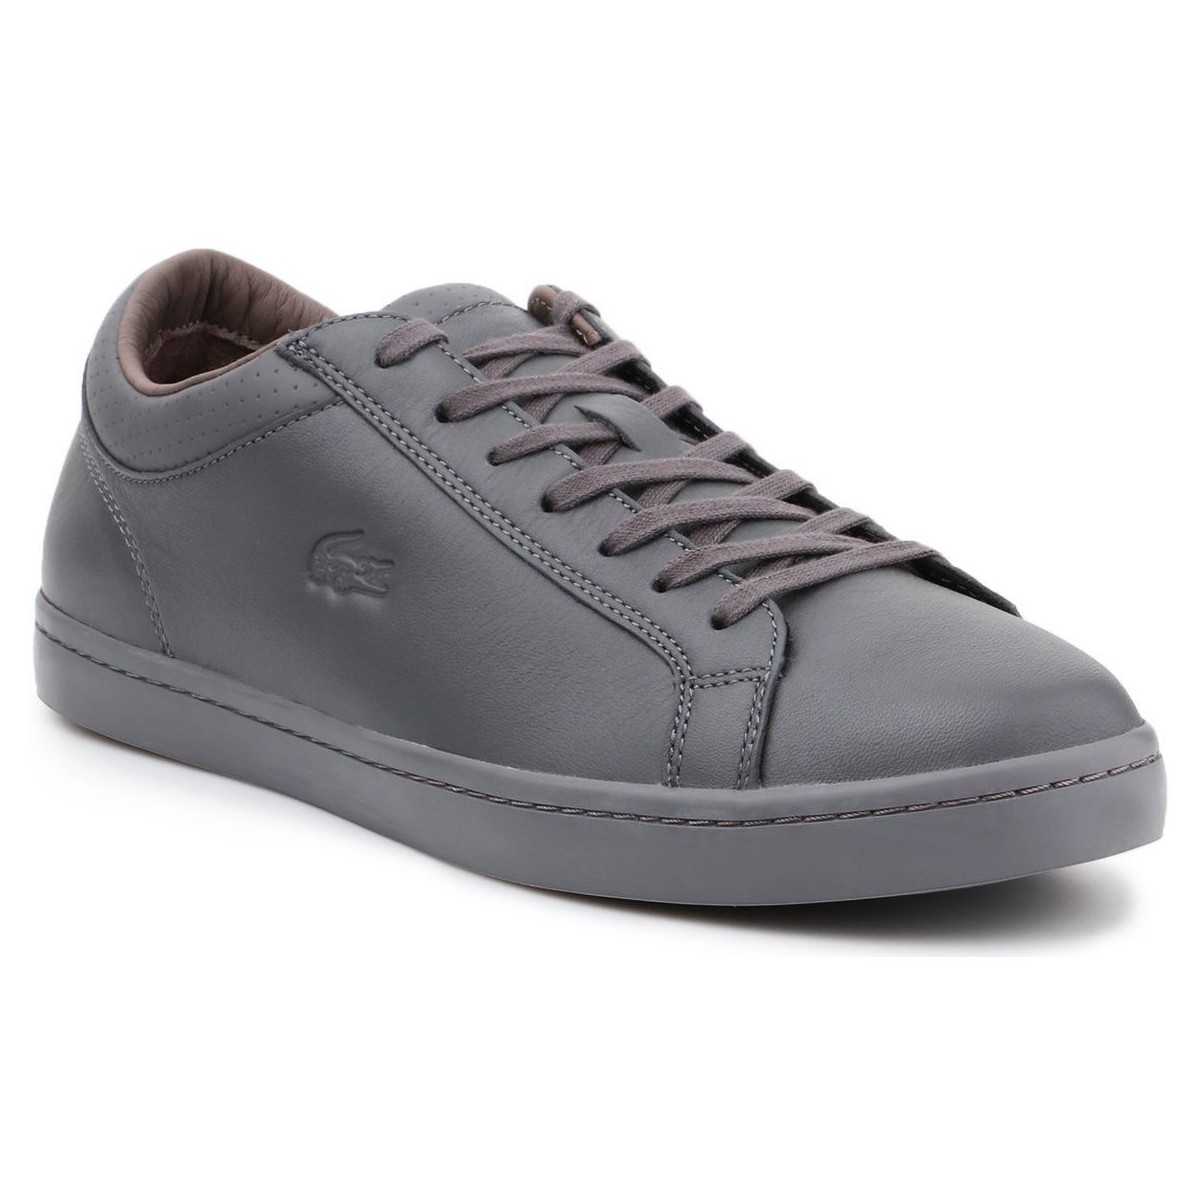 Παπούτσια Άνδρας Χαμηλά Sneakers Lacoste 30SRM4015 Grey